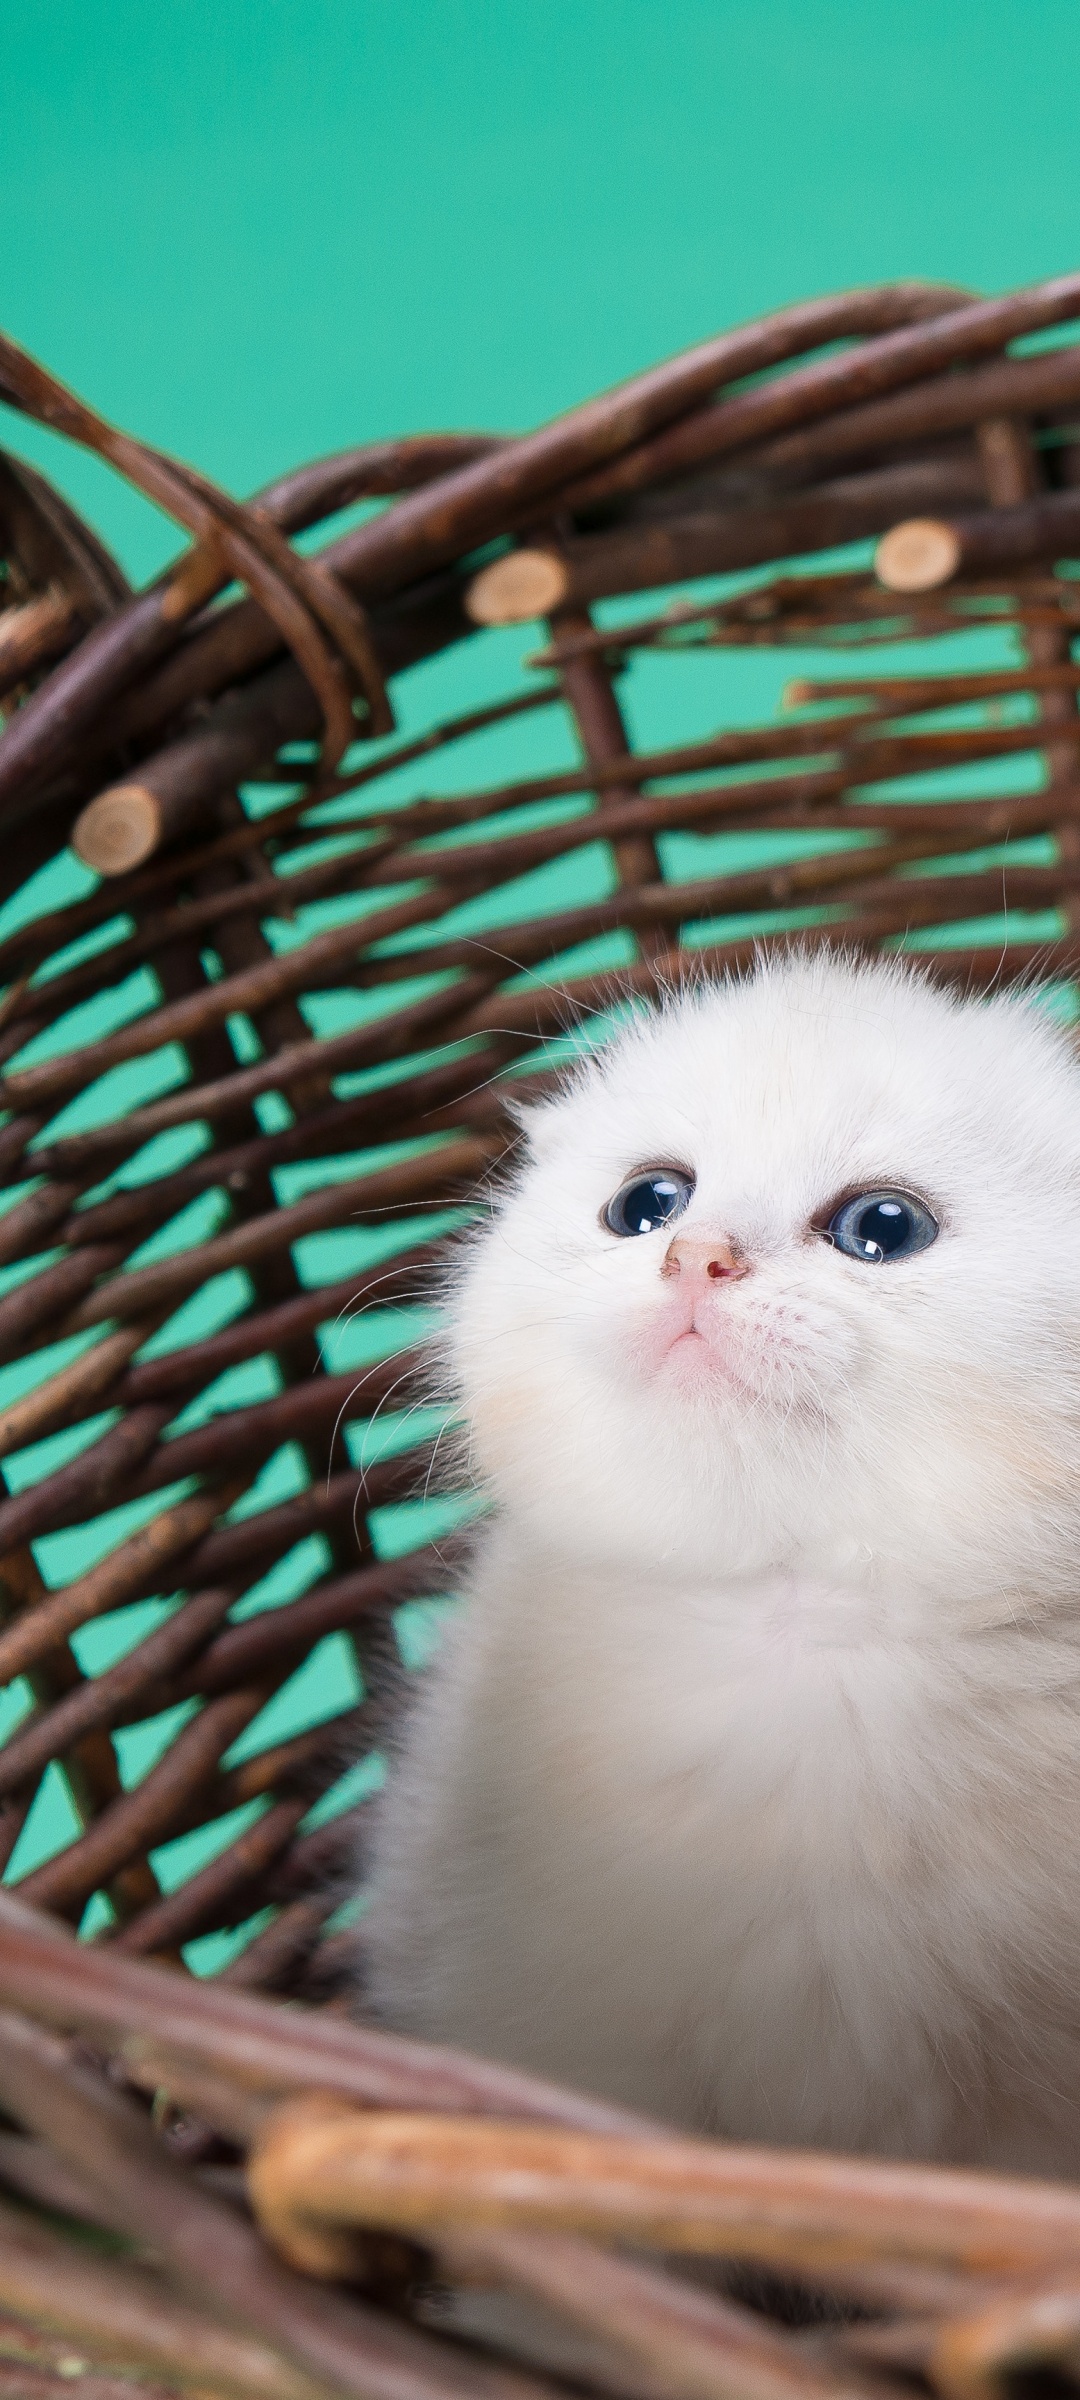 3 Ideas for Cute Cat Photos